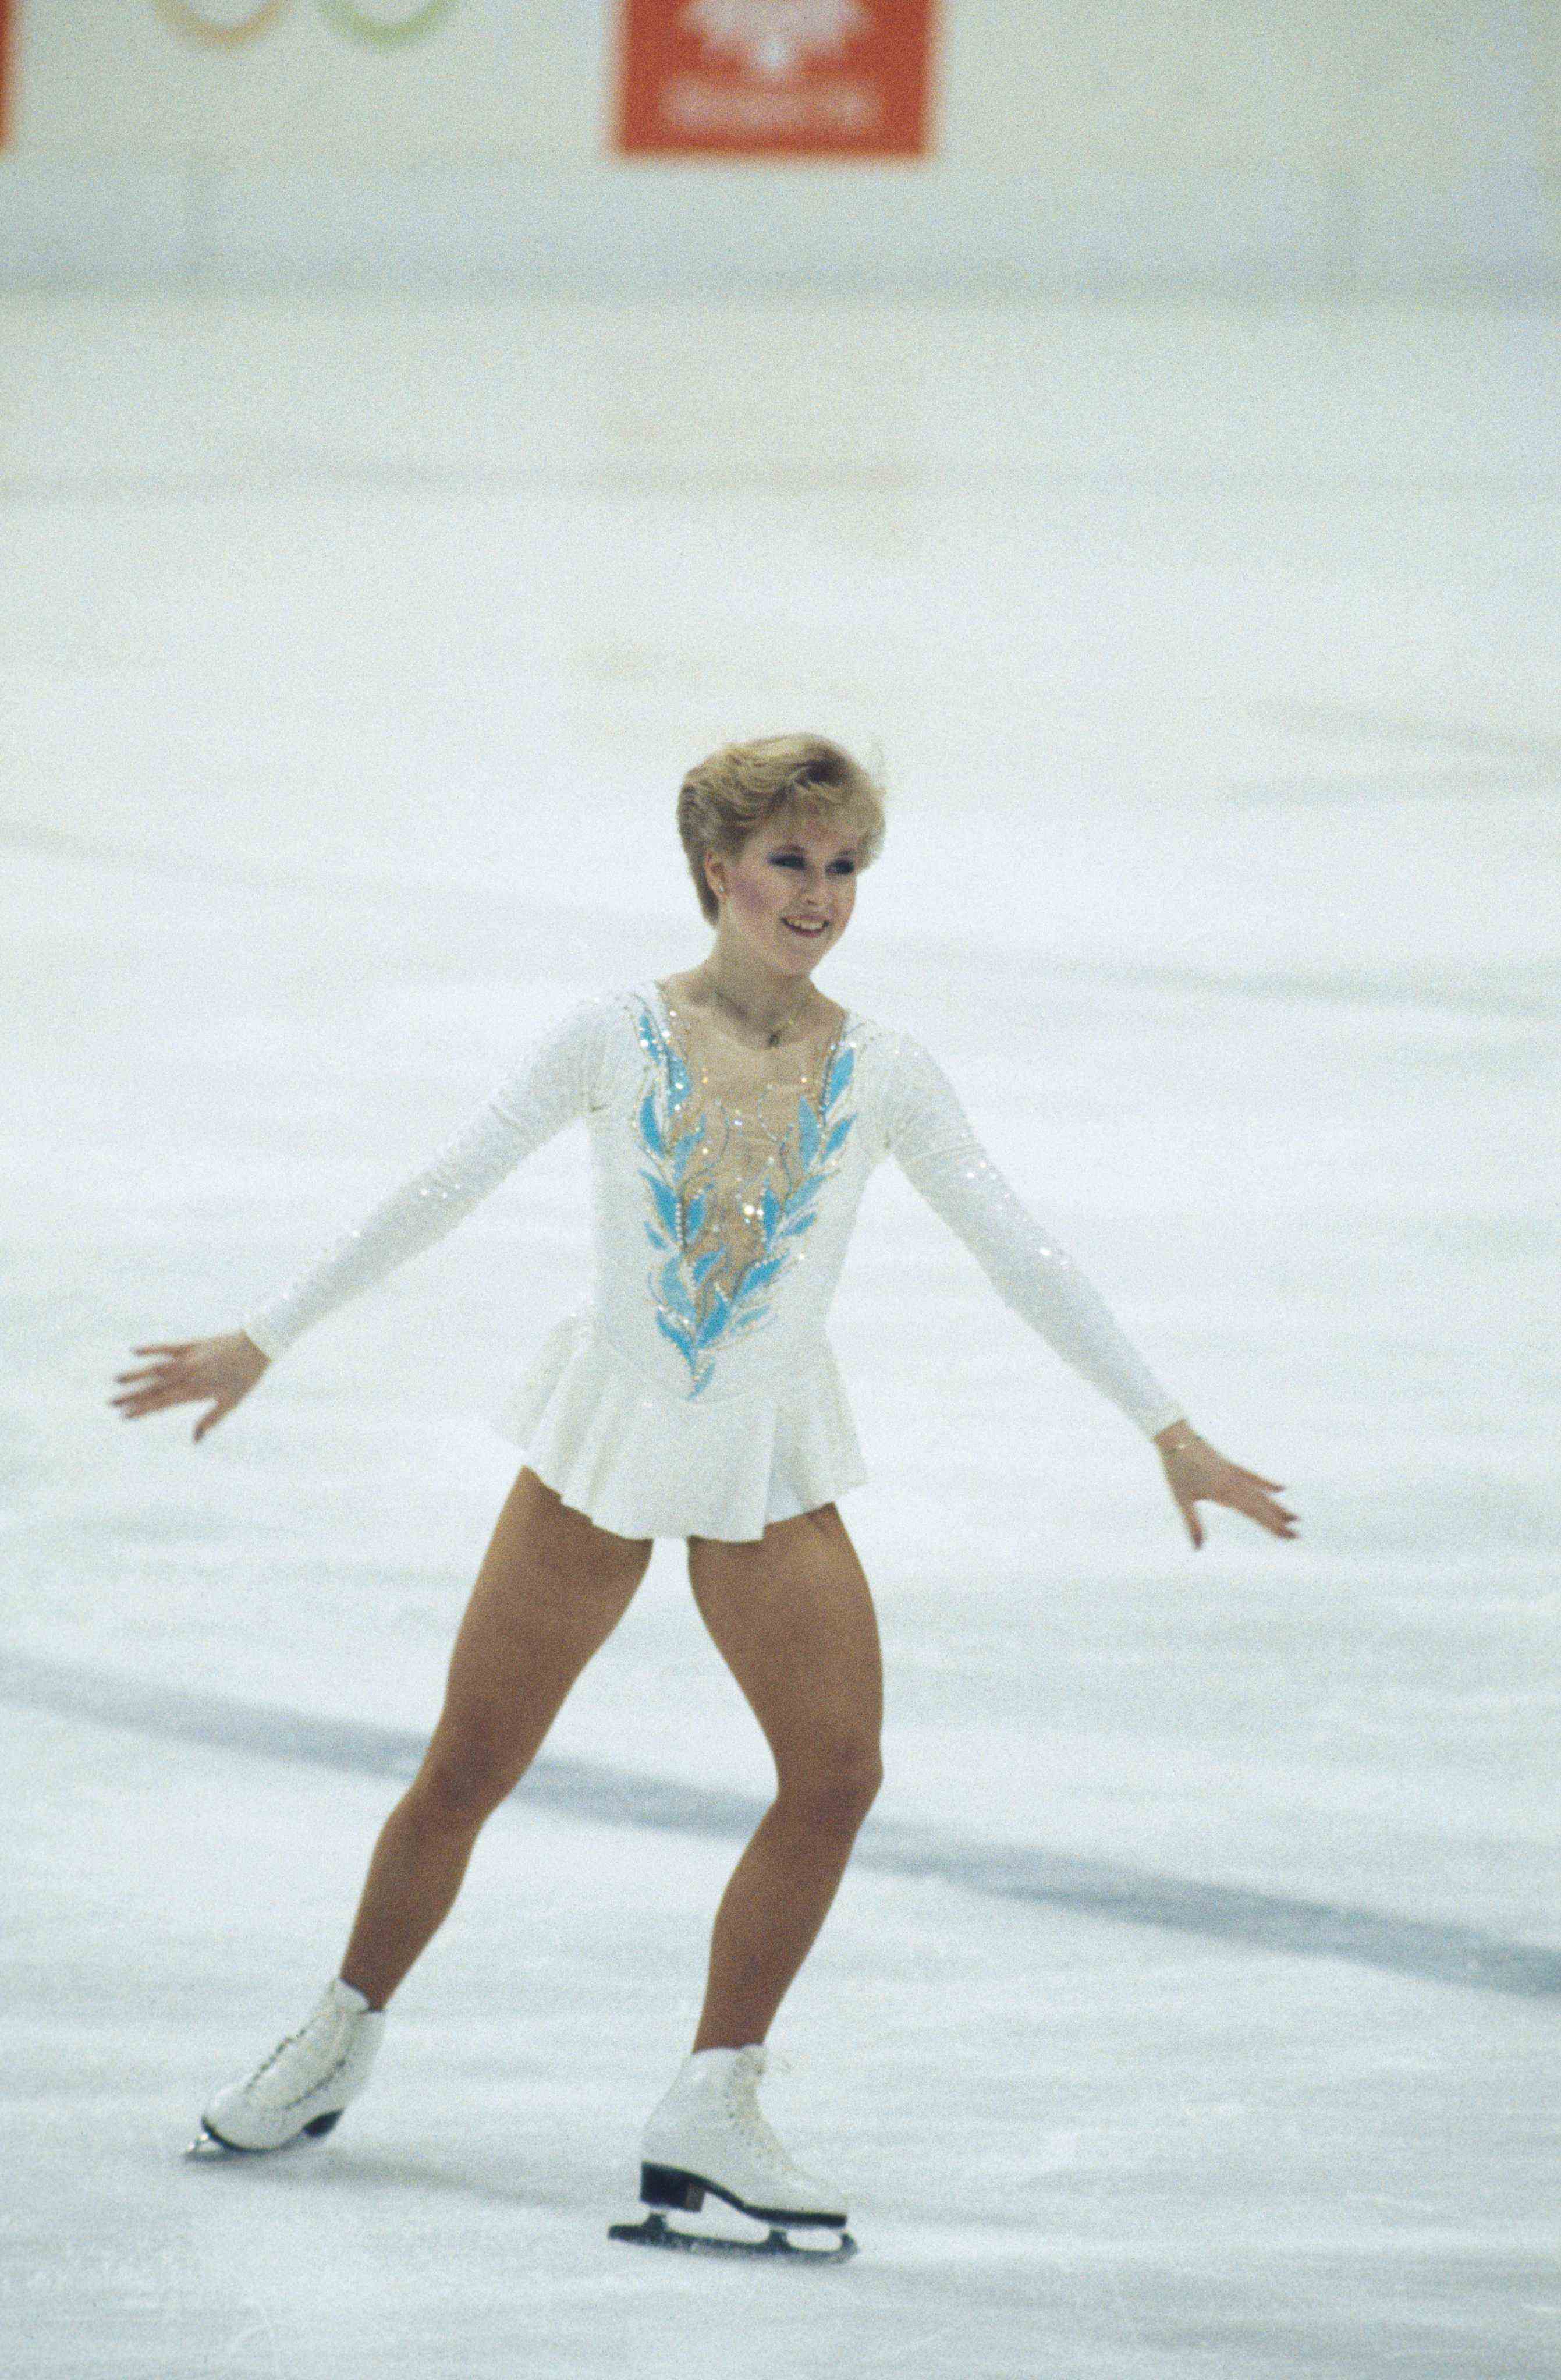 Jogos Olímpicos da década de 1980